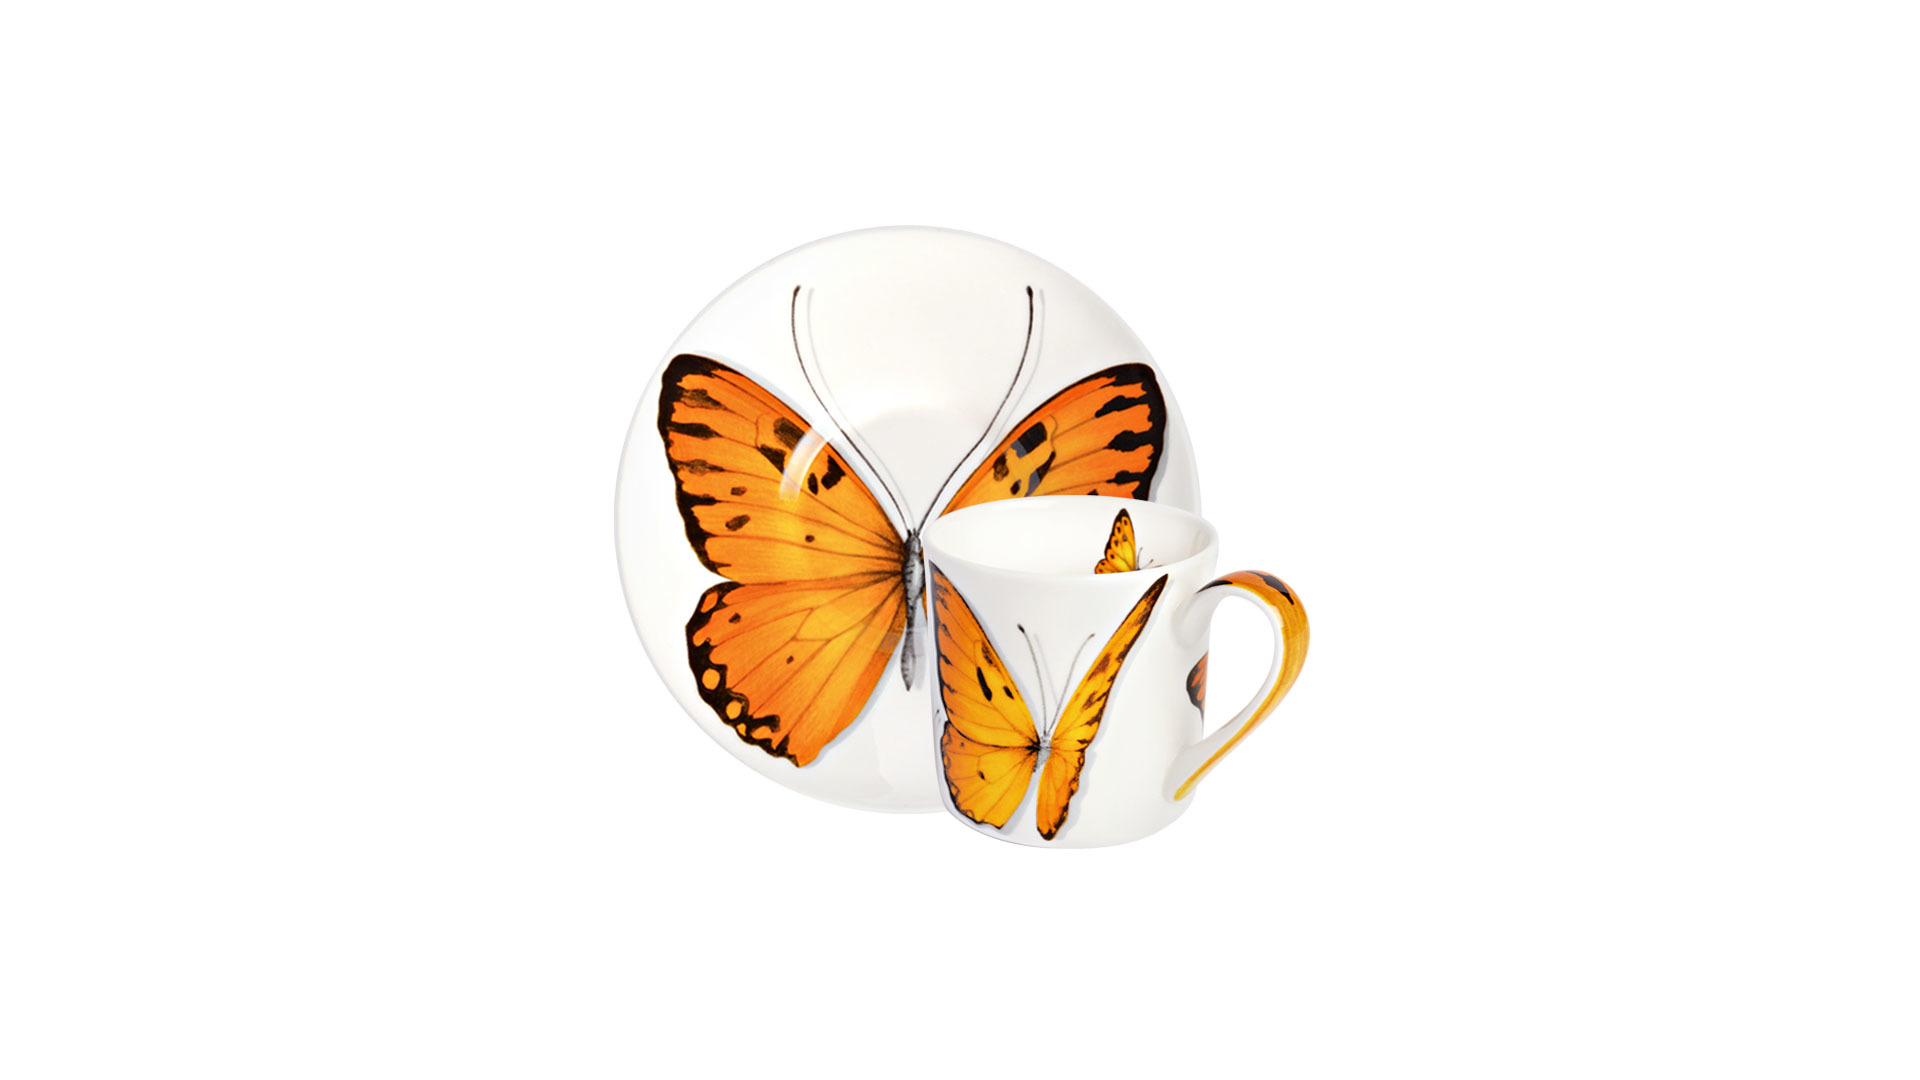 Чашка кофейная с блюдцем Taitu Свобода Бабочка 100 мл, фарфор костяной, оранжевый